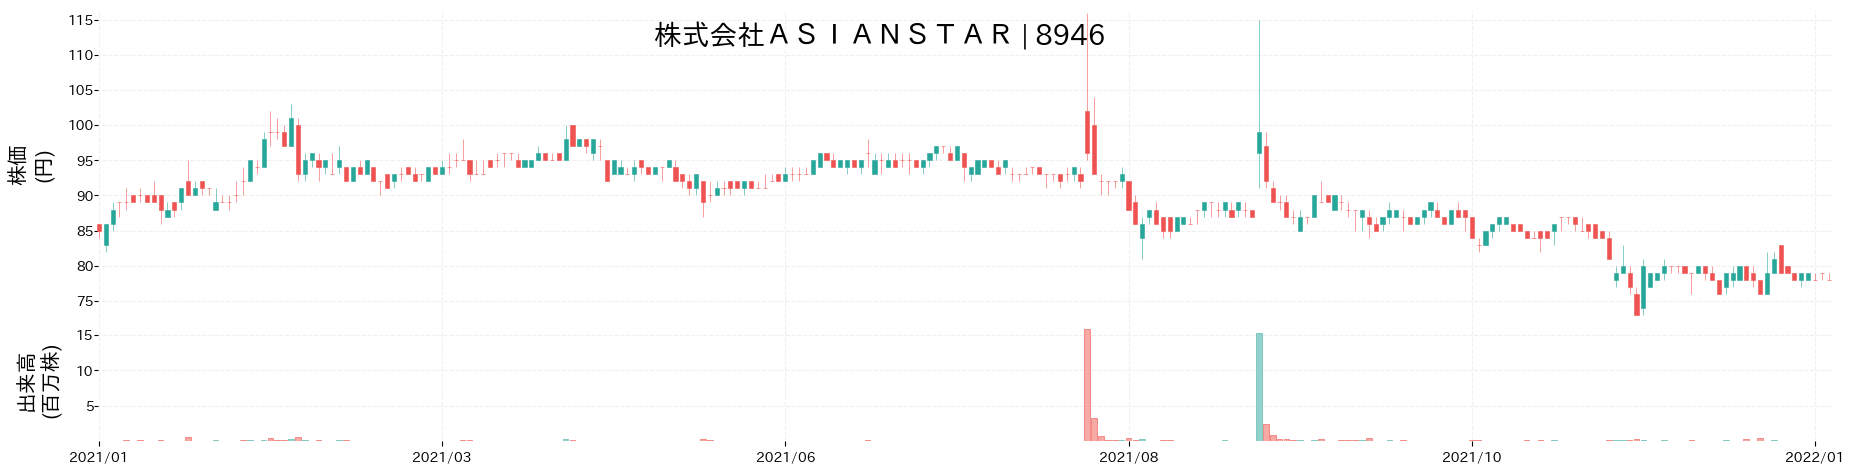 ASIAN STARの株価推移(2021)